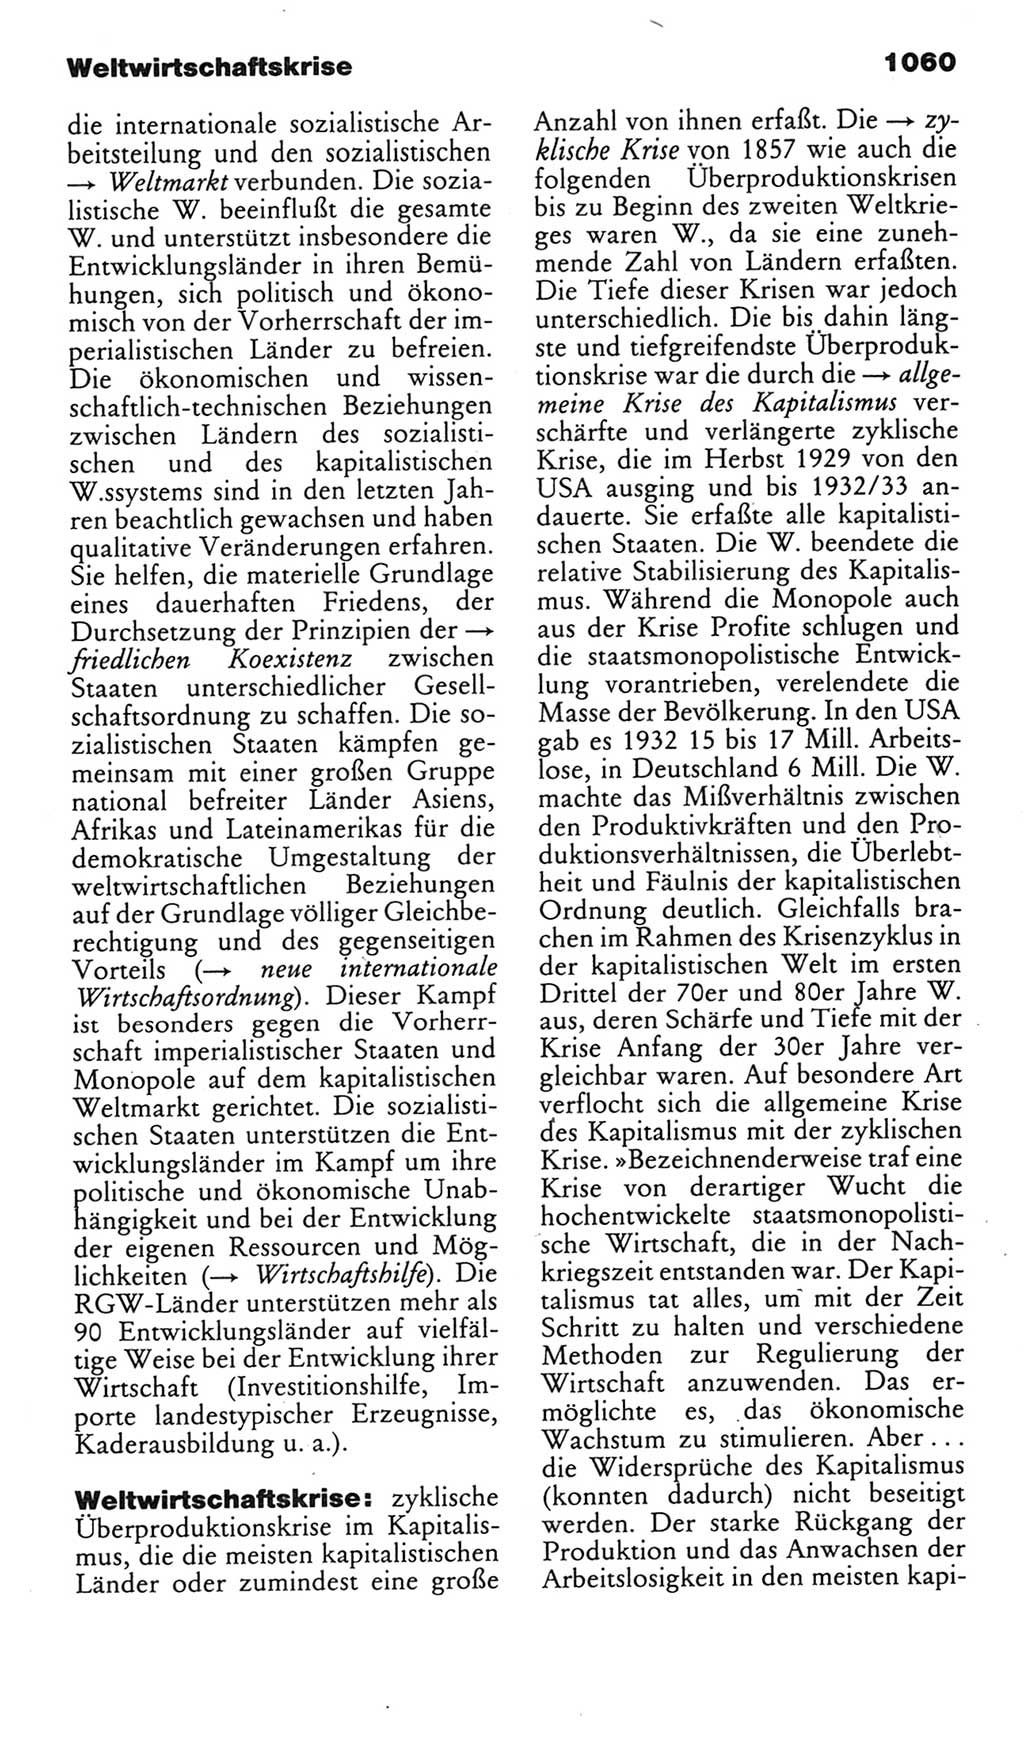 Kleines politisches Wörterbuch [Deutsche Demokratische Republik (DDR)] 1985, Seite 1060 (Kl. pol. Wb. DDR 1985, S. 1060)